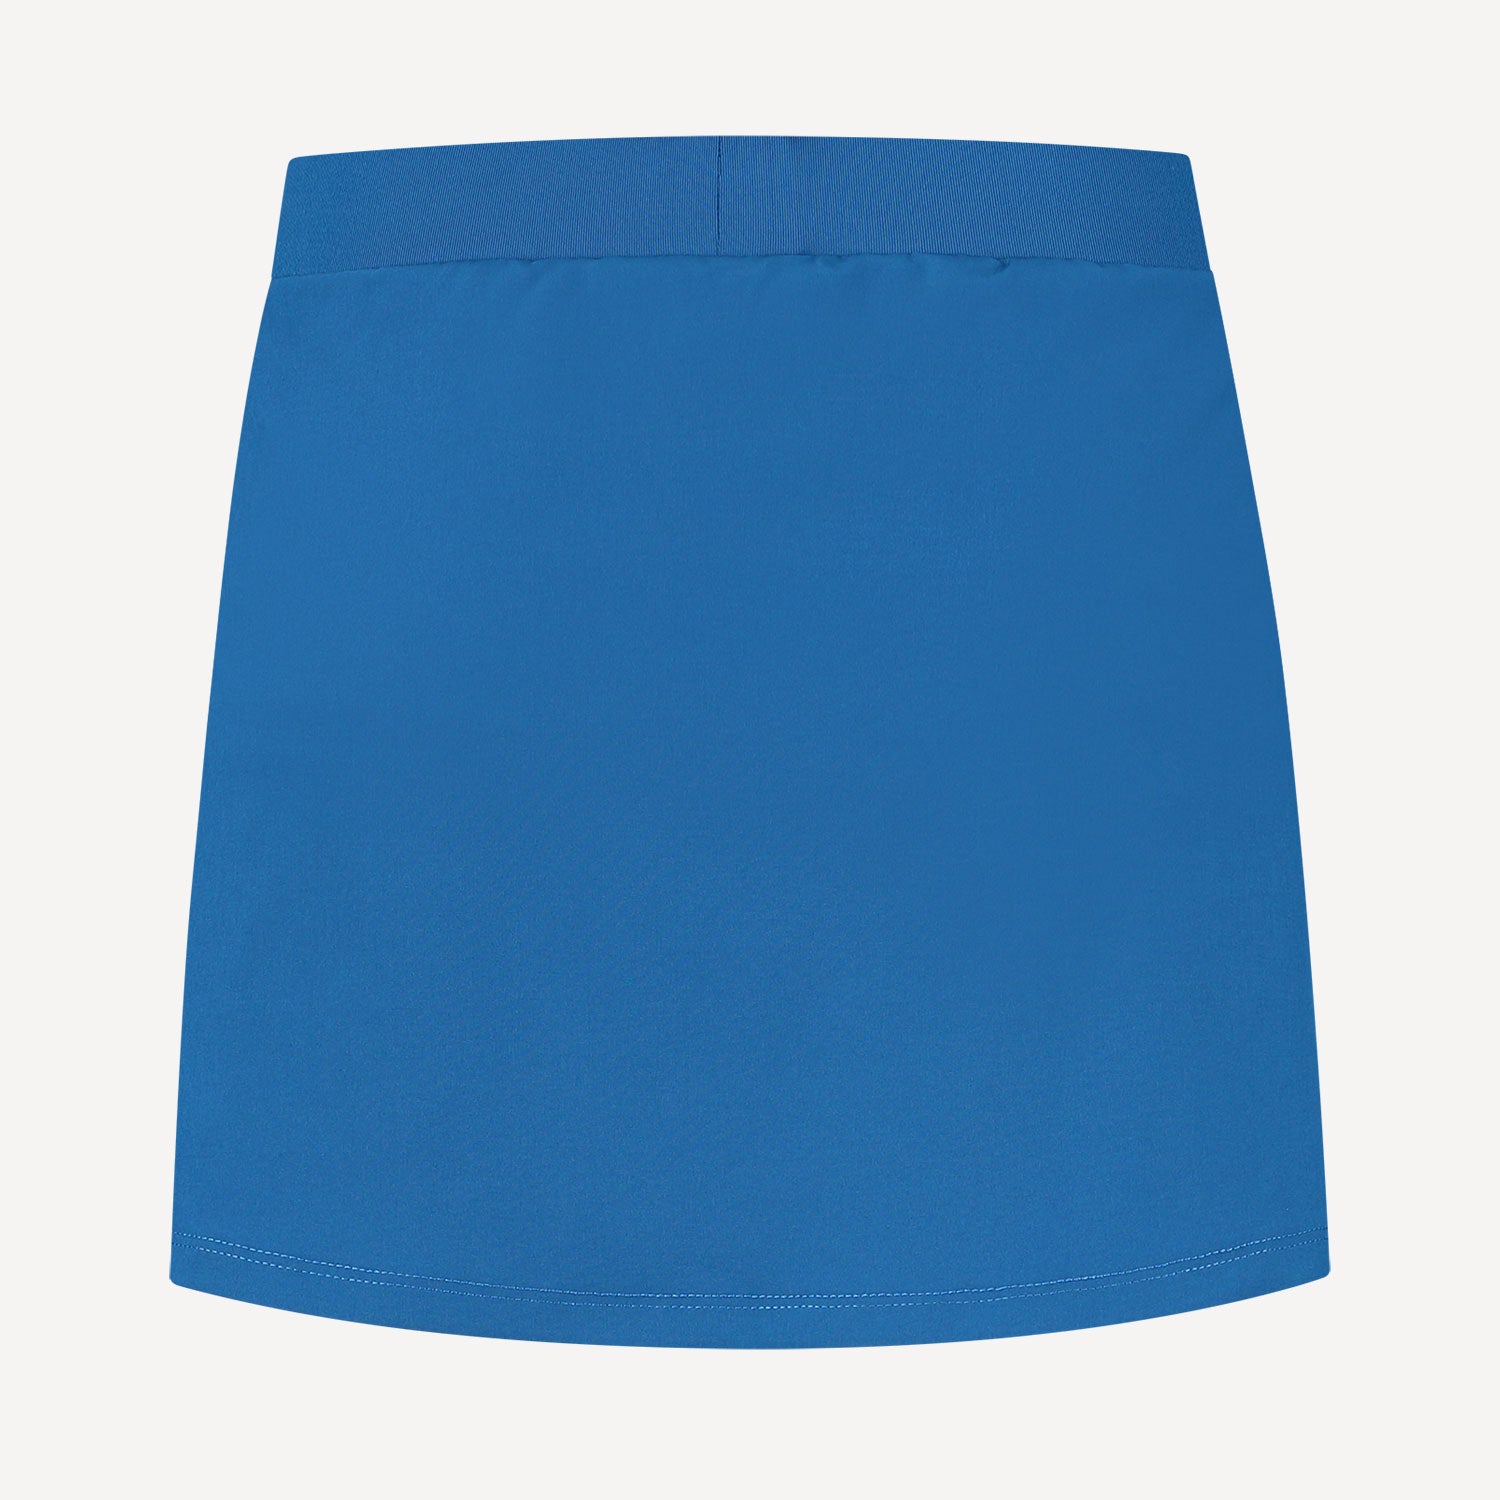 K-Swiss Hypercourt Women's Tennis Skirt Blue (2)